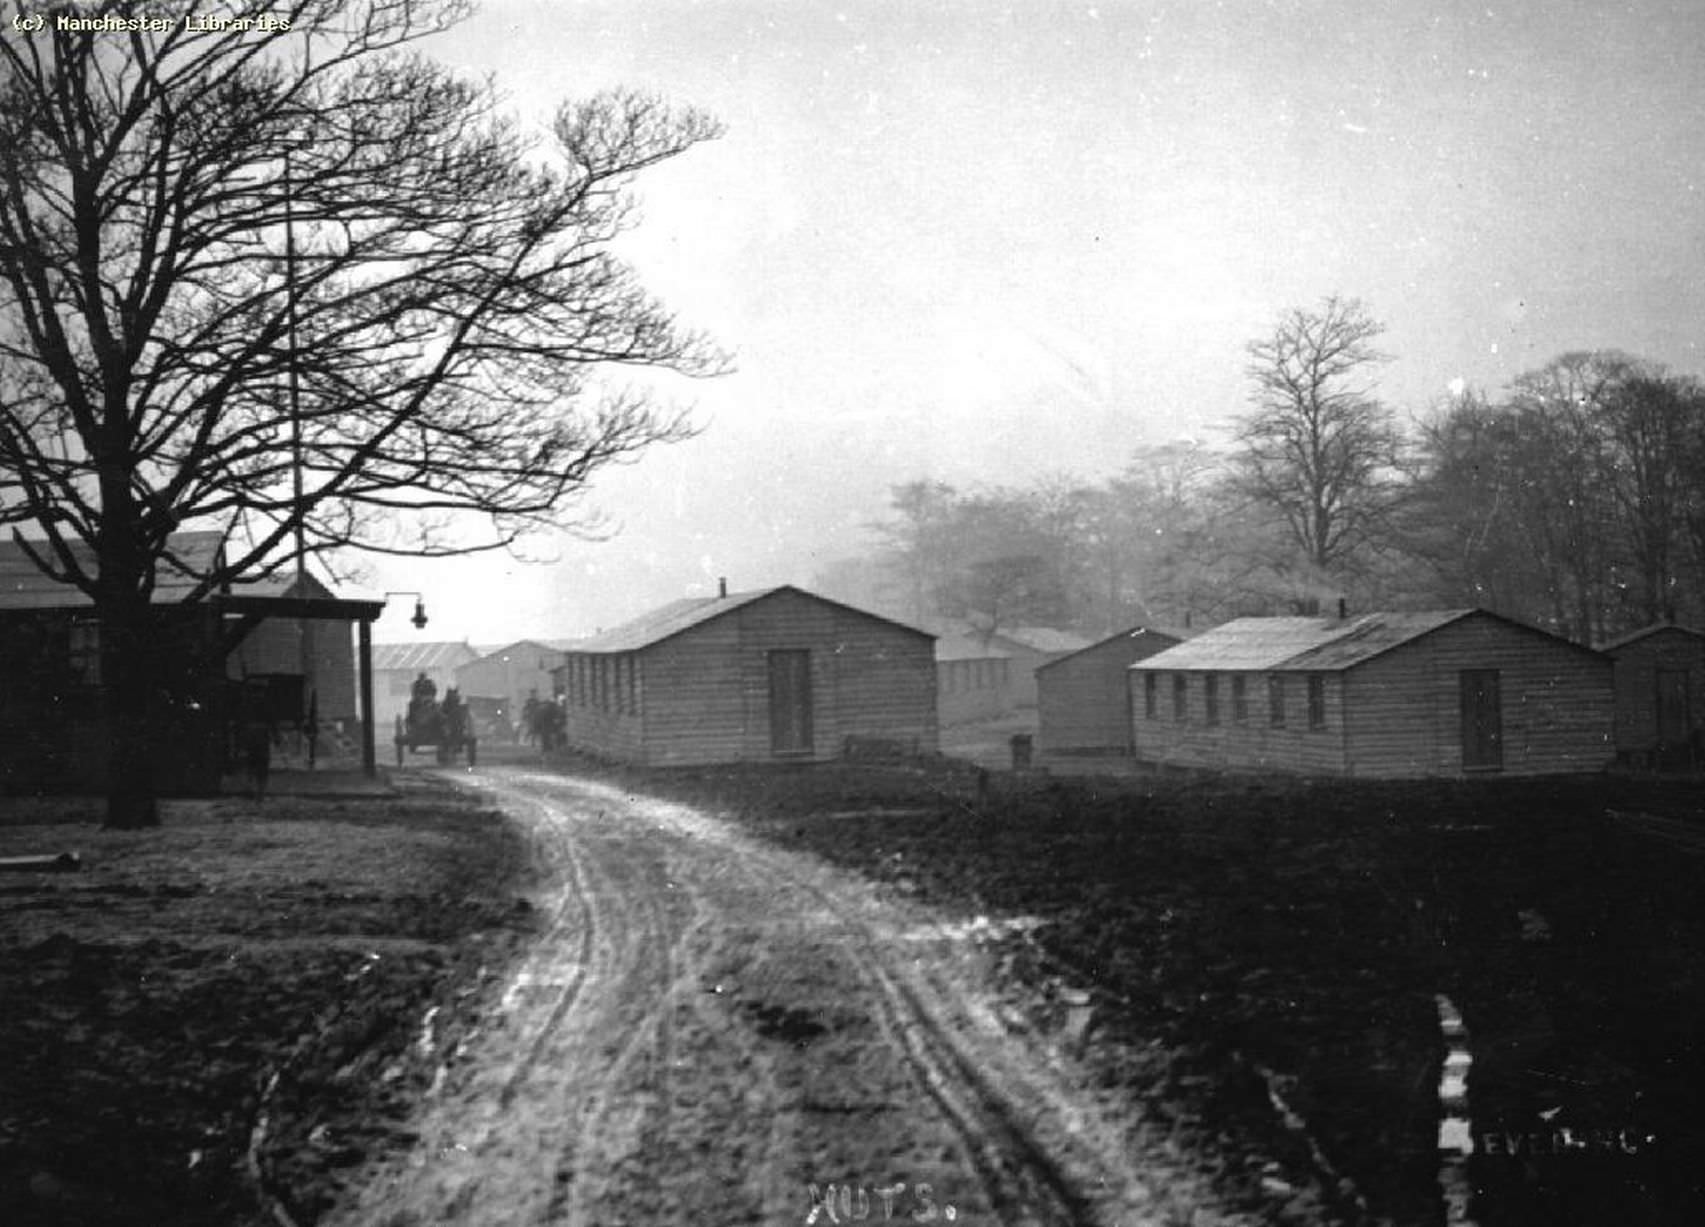 Manchester Regiment Convalescent Camp, Heaton Park